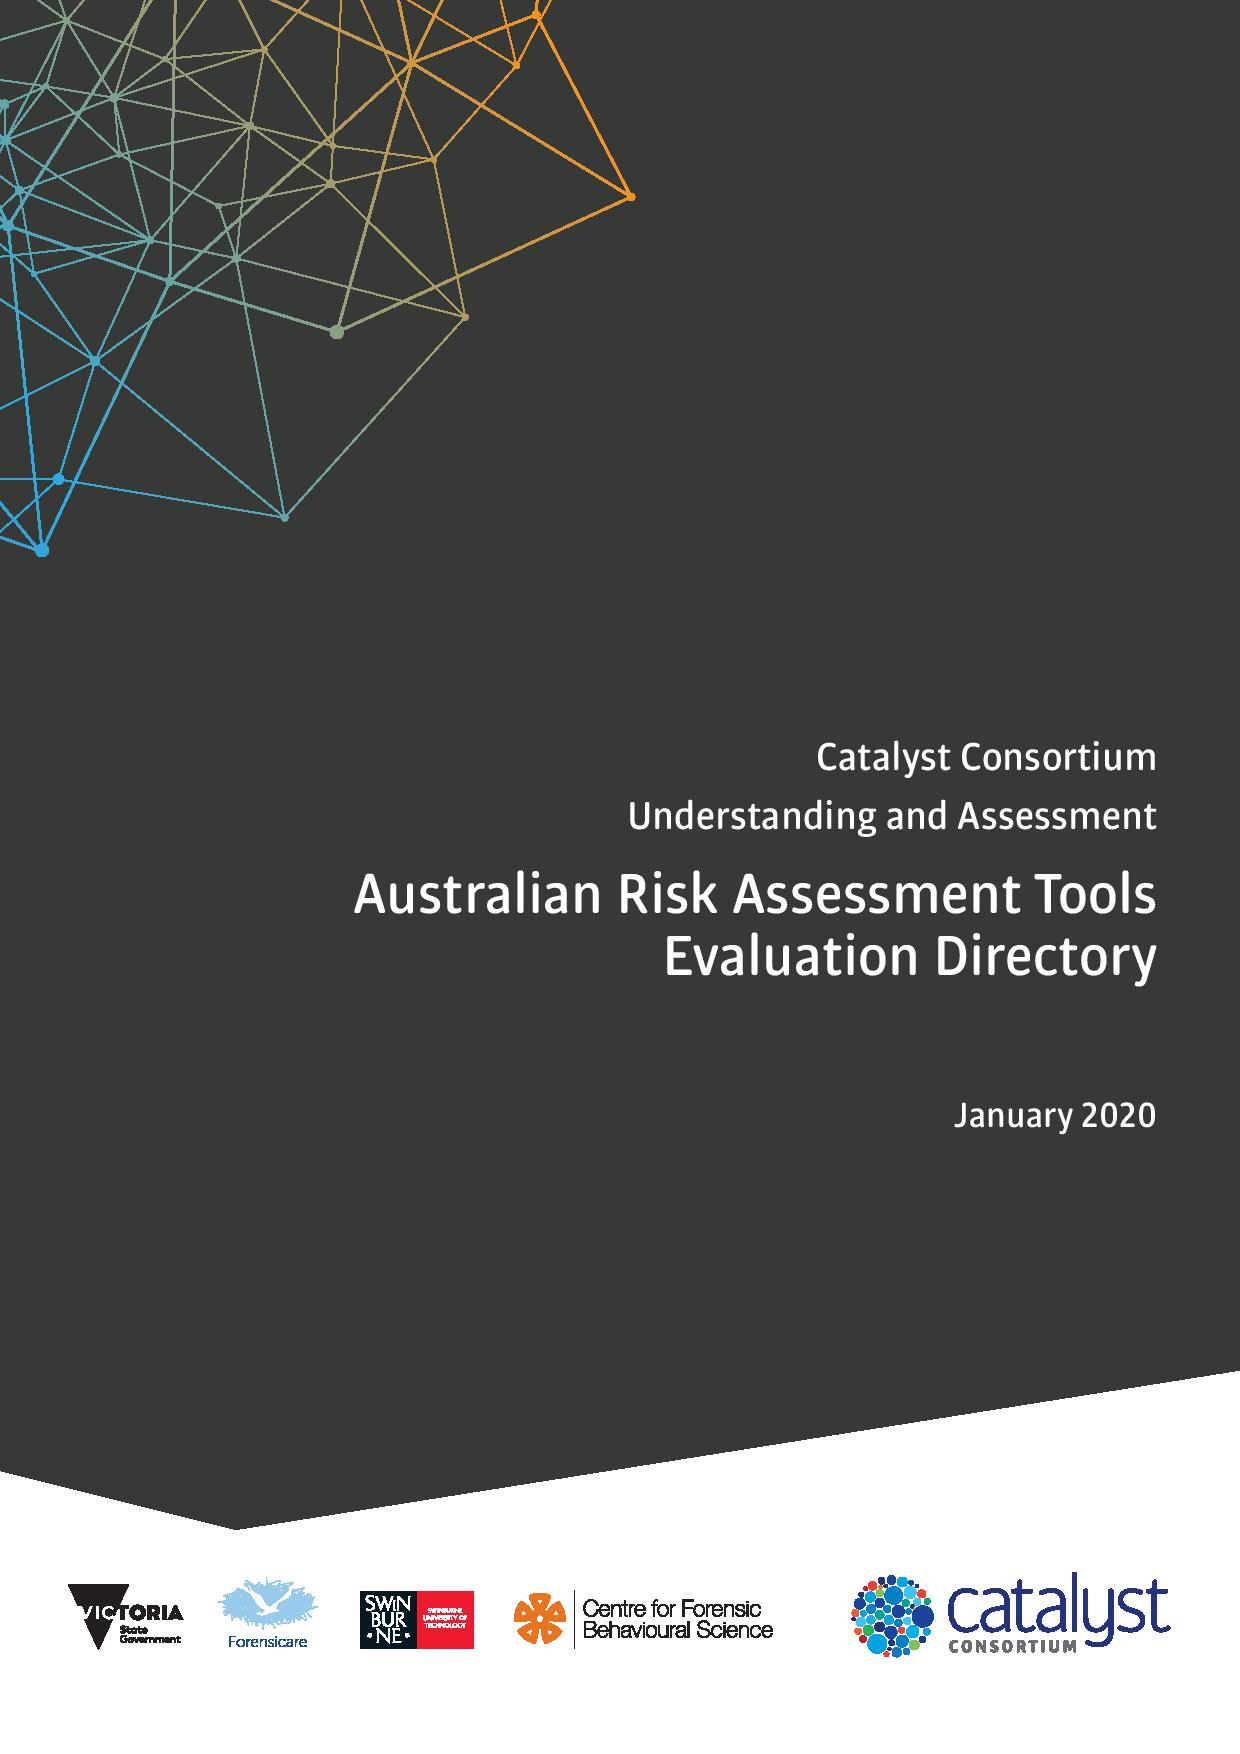 澳大利亚风险评估工具评估目录(Aus-RATED)